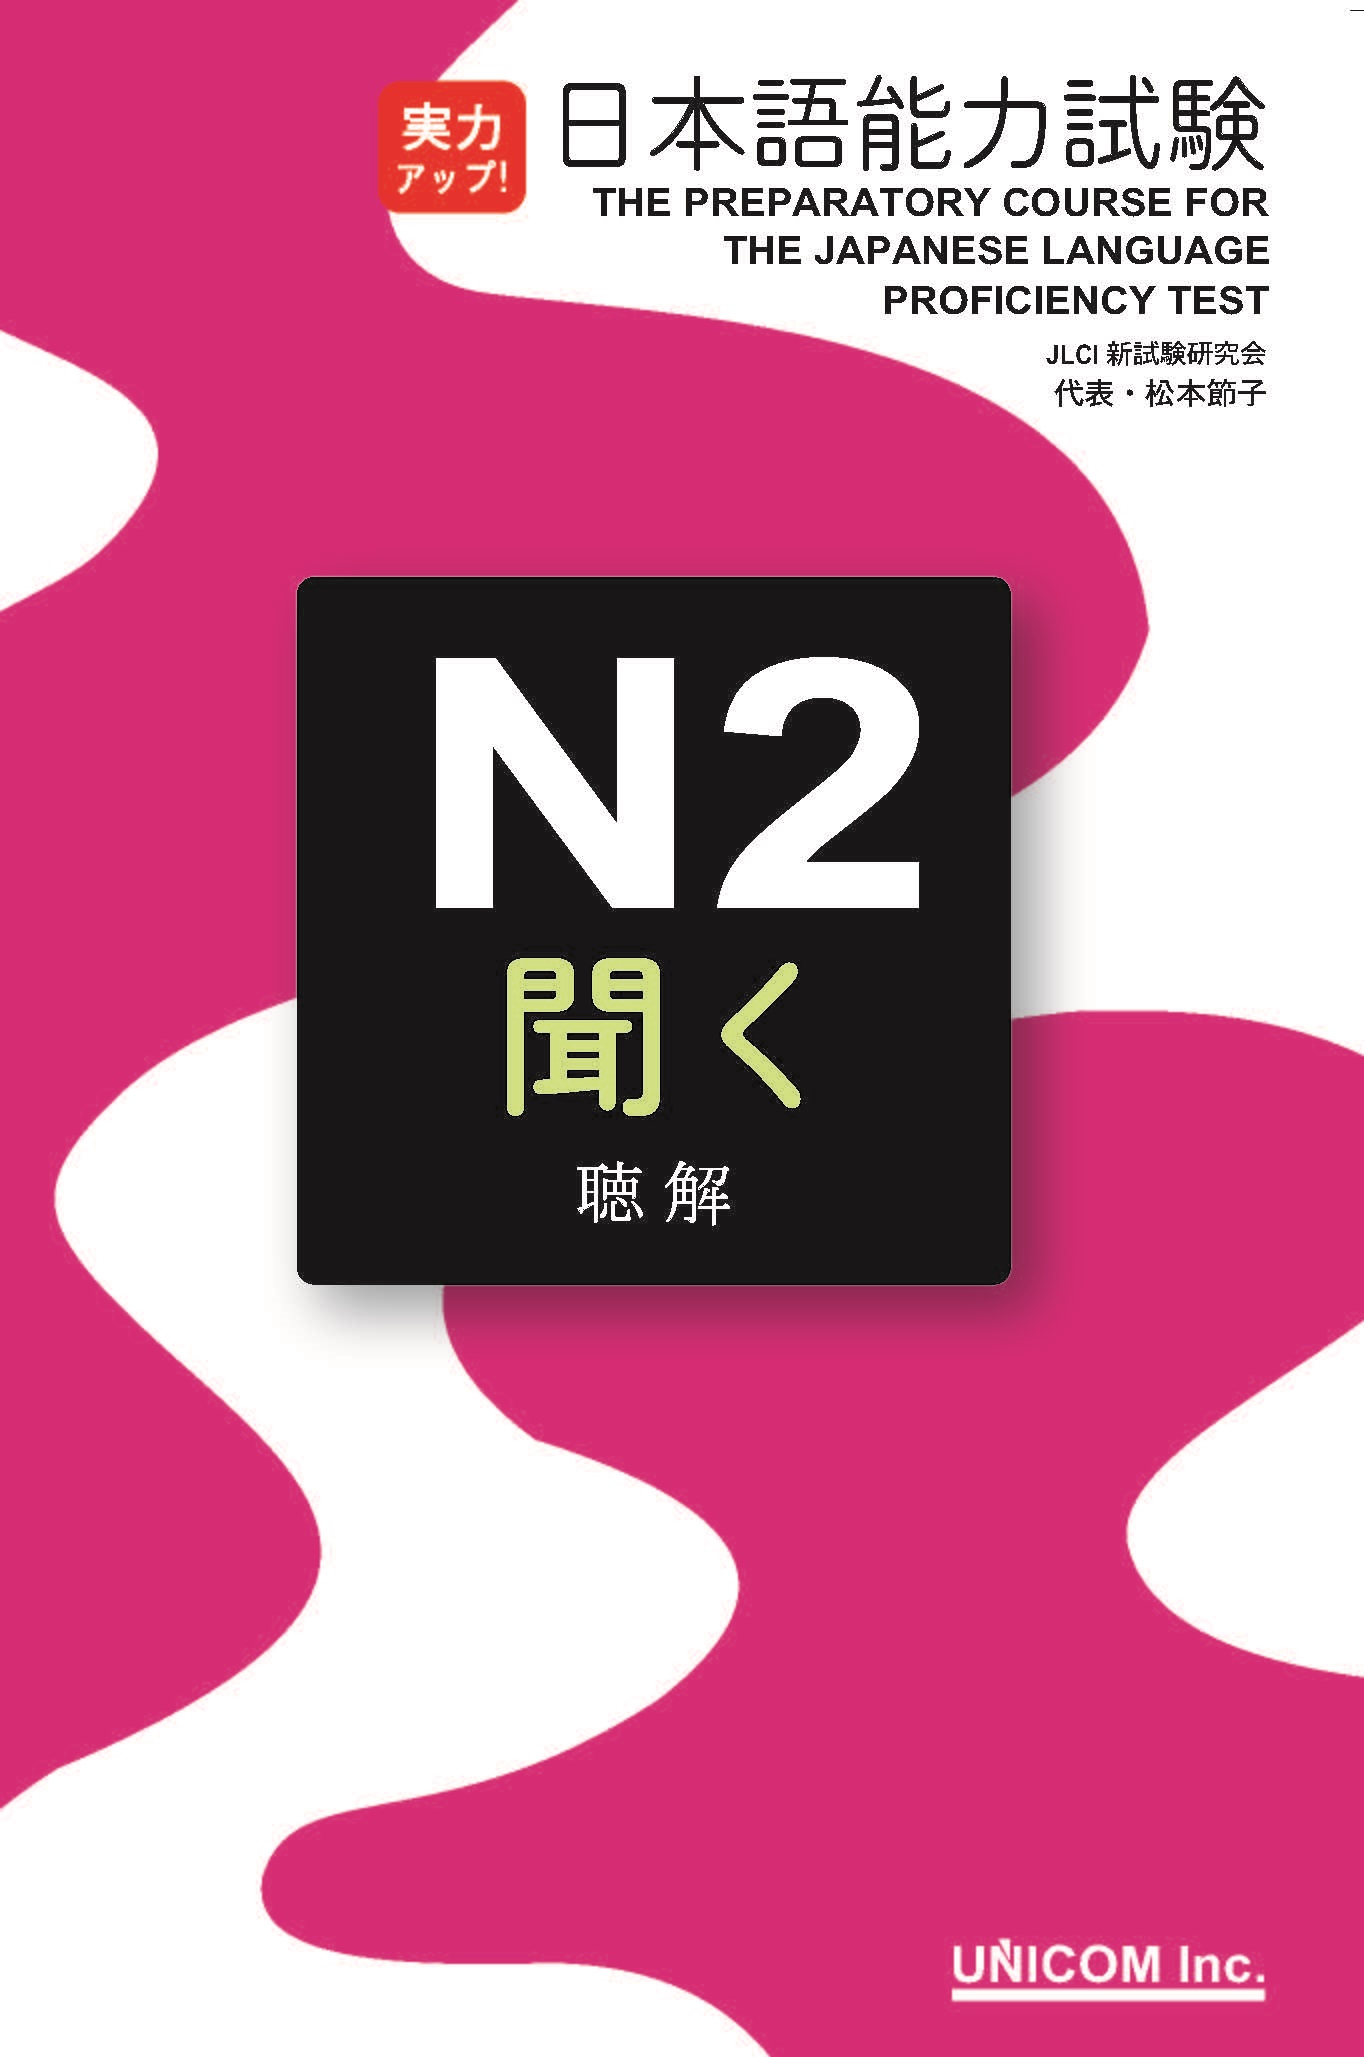 Sách Luyện Thi Jitsuryoku appu N2 Nghe Hiểu | 実力アップ!日本語能力試験N2「聞く」(聴解)